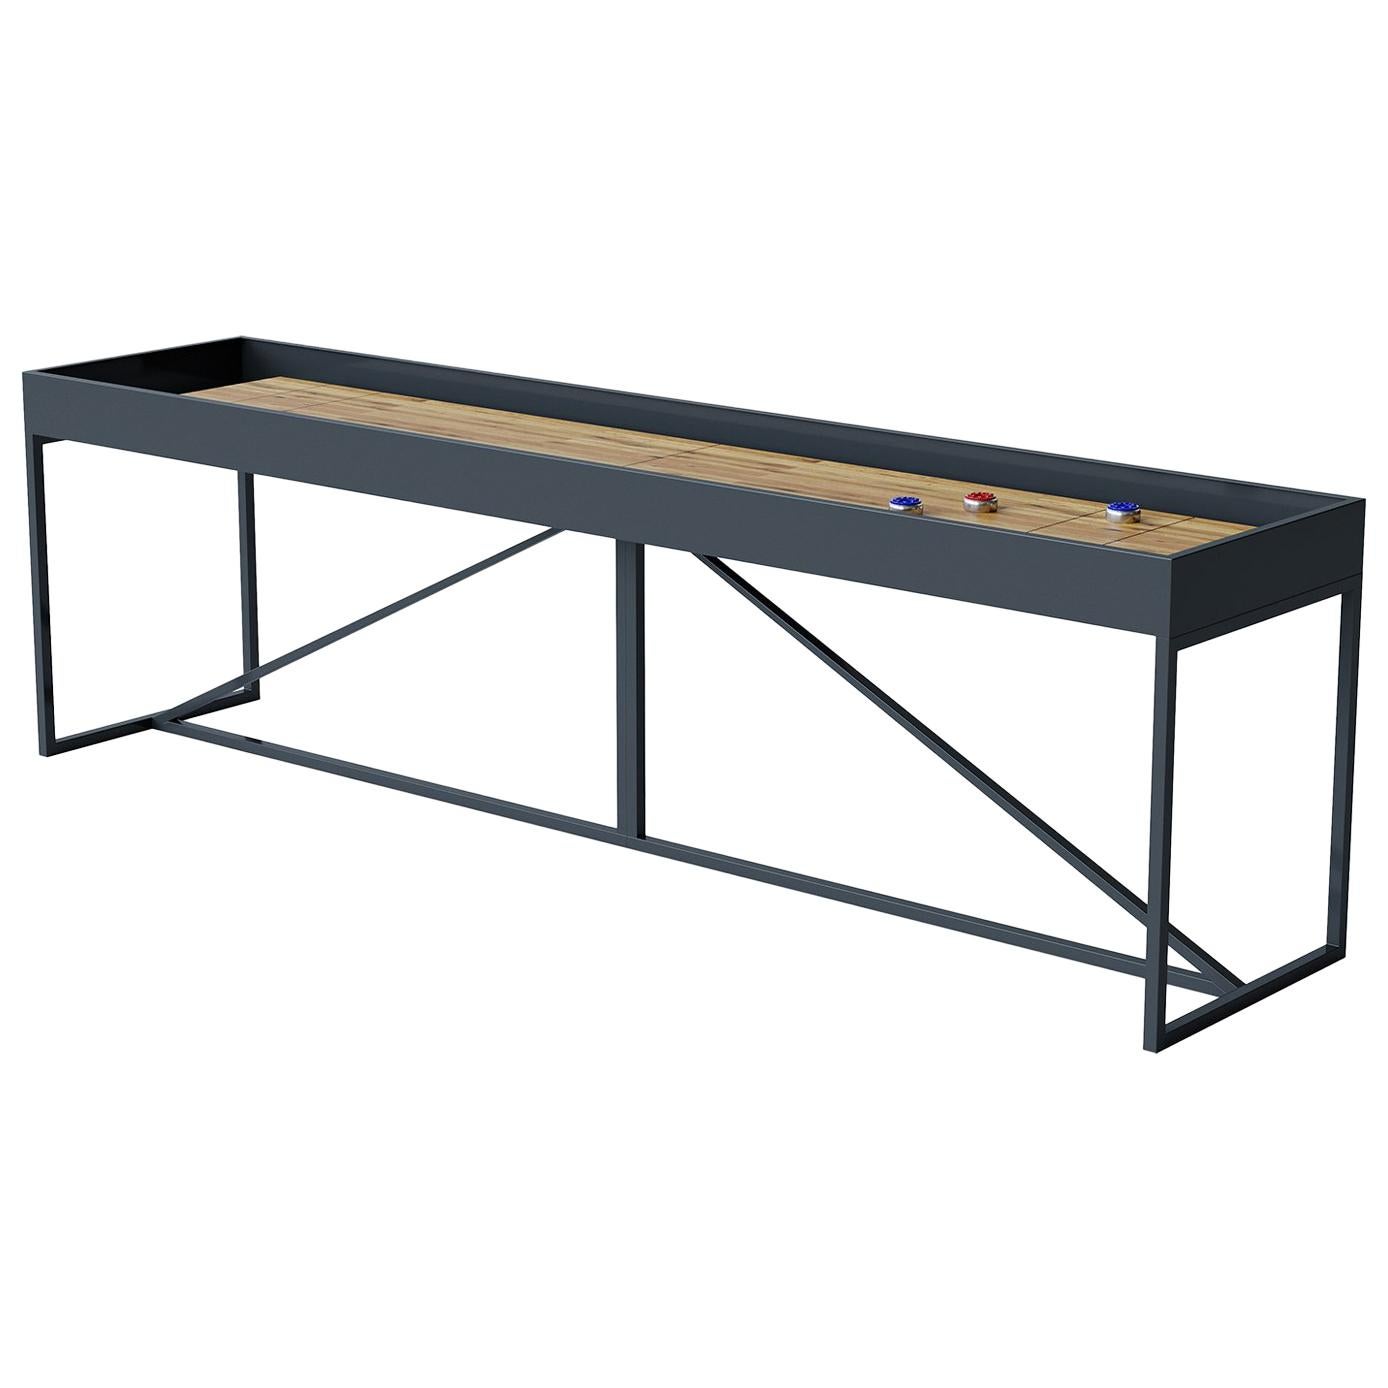 Table en chêne moderne « The Break » avec surface de jeu et cadre métallique de 1,80 m